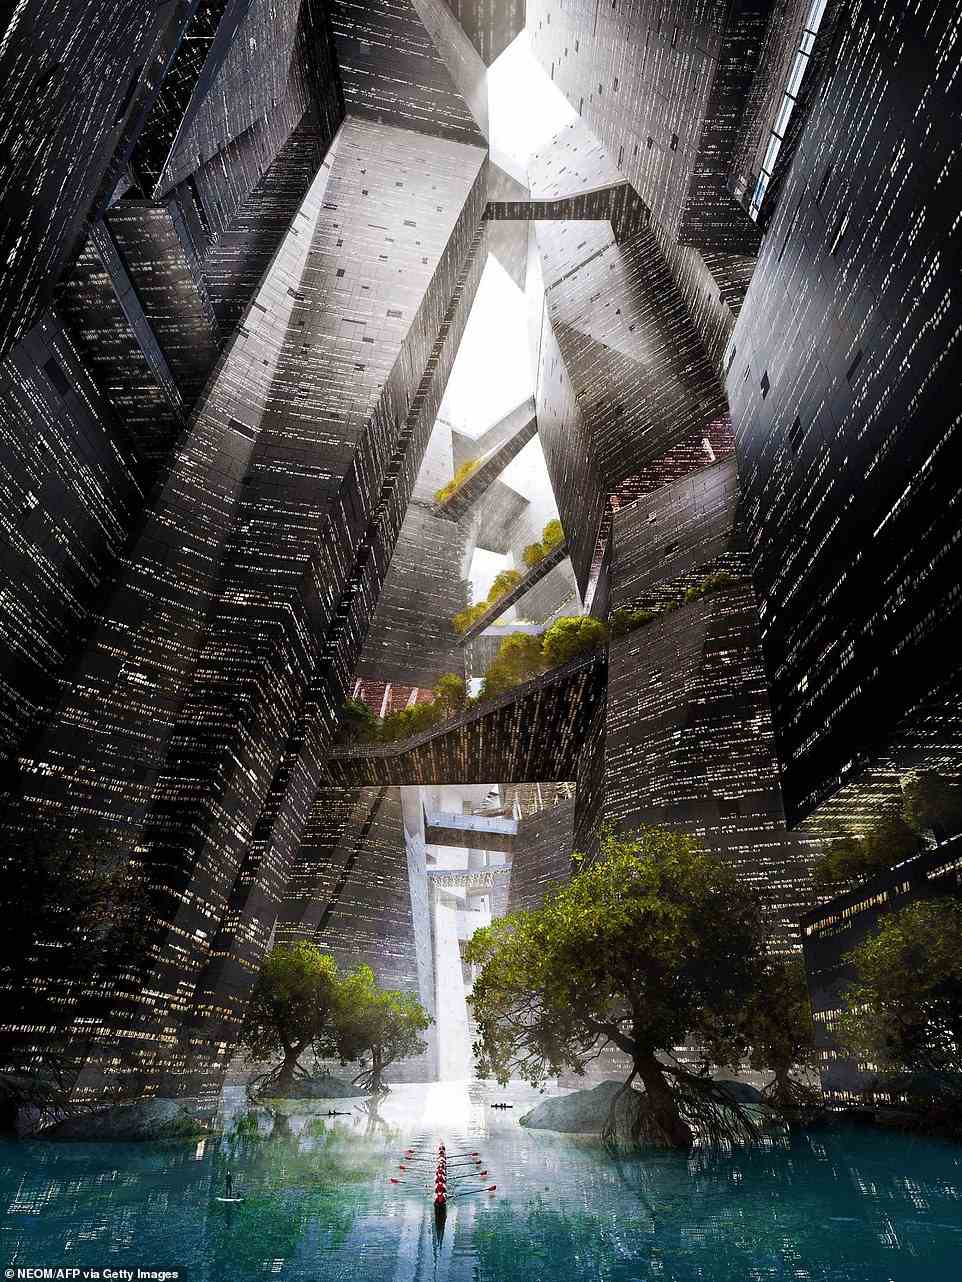 Designpläne für die lineare Stadt zeigen die Sci-Fi-inspirierten Innenräume mit eckigen Glasstrukturen, die sich in verschiedenen Formen über einem künstlichen Fluss winden